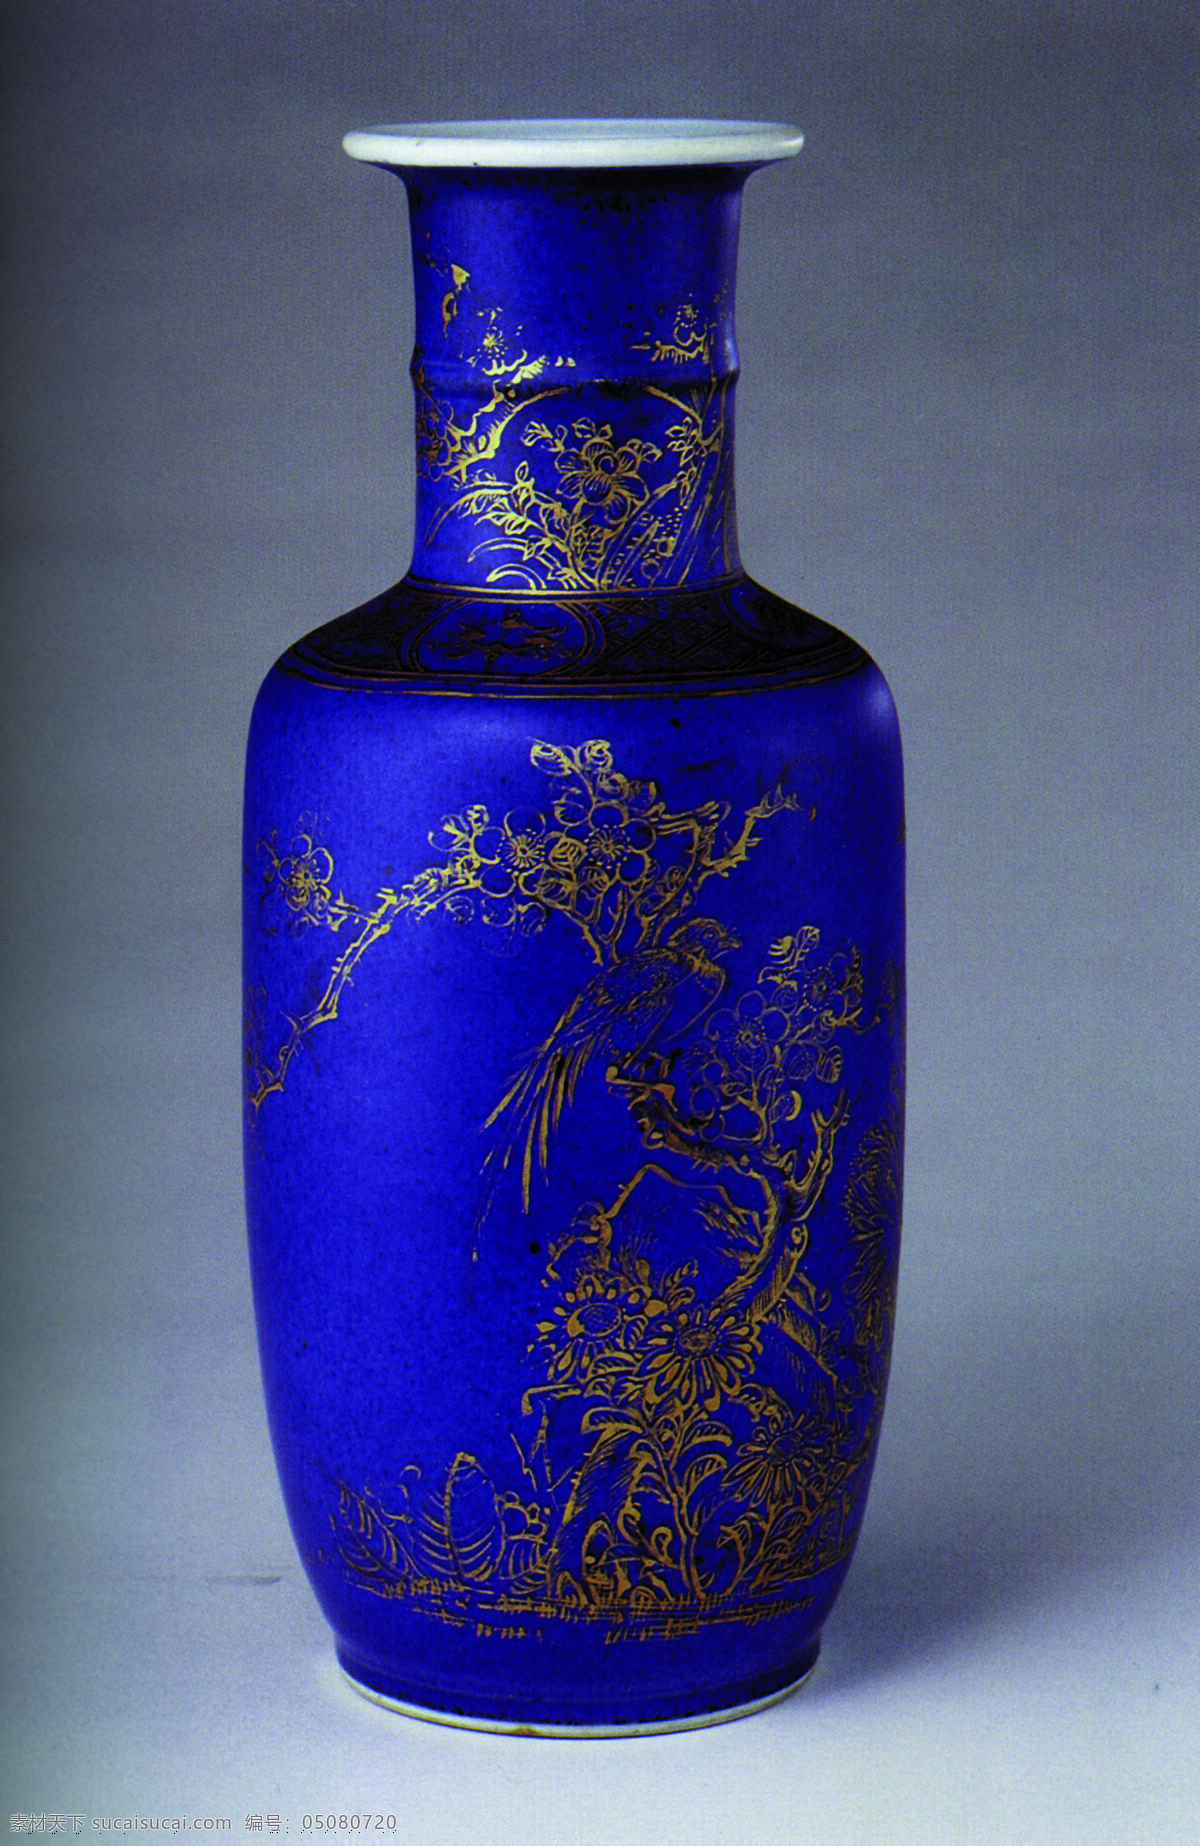 瓷器图片 传统 中国元素 工艺品 中国风 瓷器 花瓶 蓝釉描金 中国 古典 艺术 篇 文化艺术 传统文化